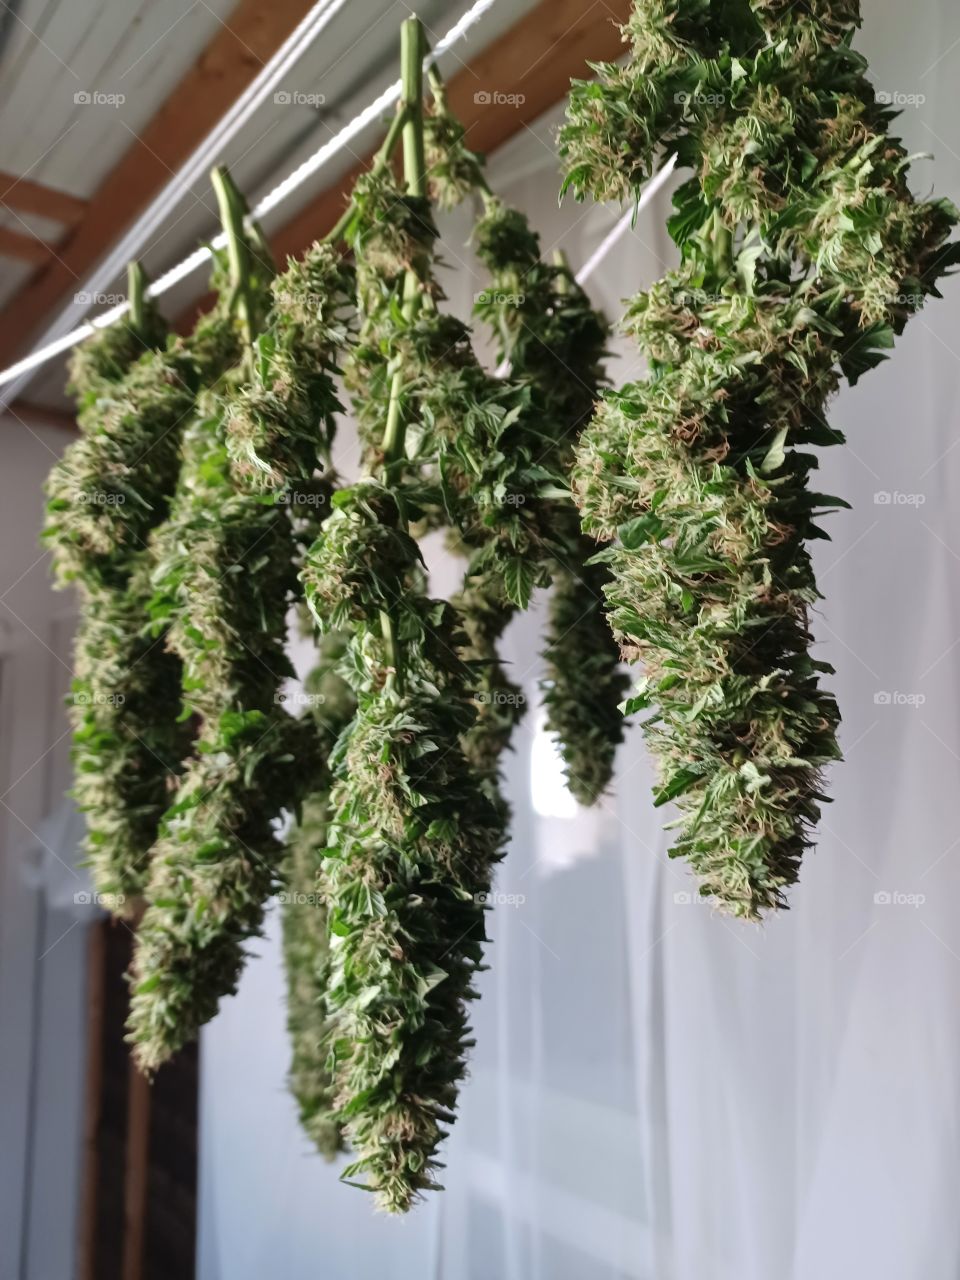 Drying marijuana